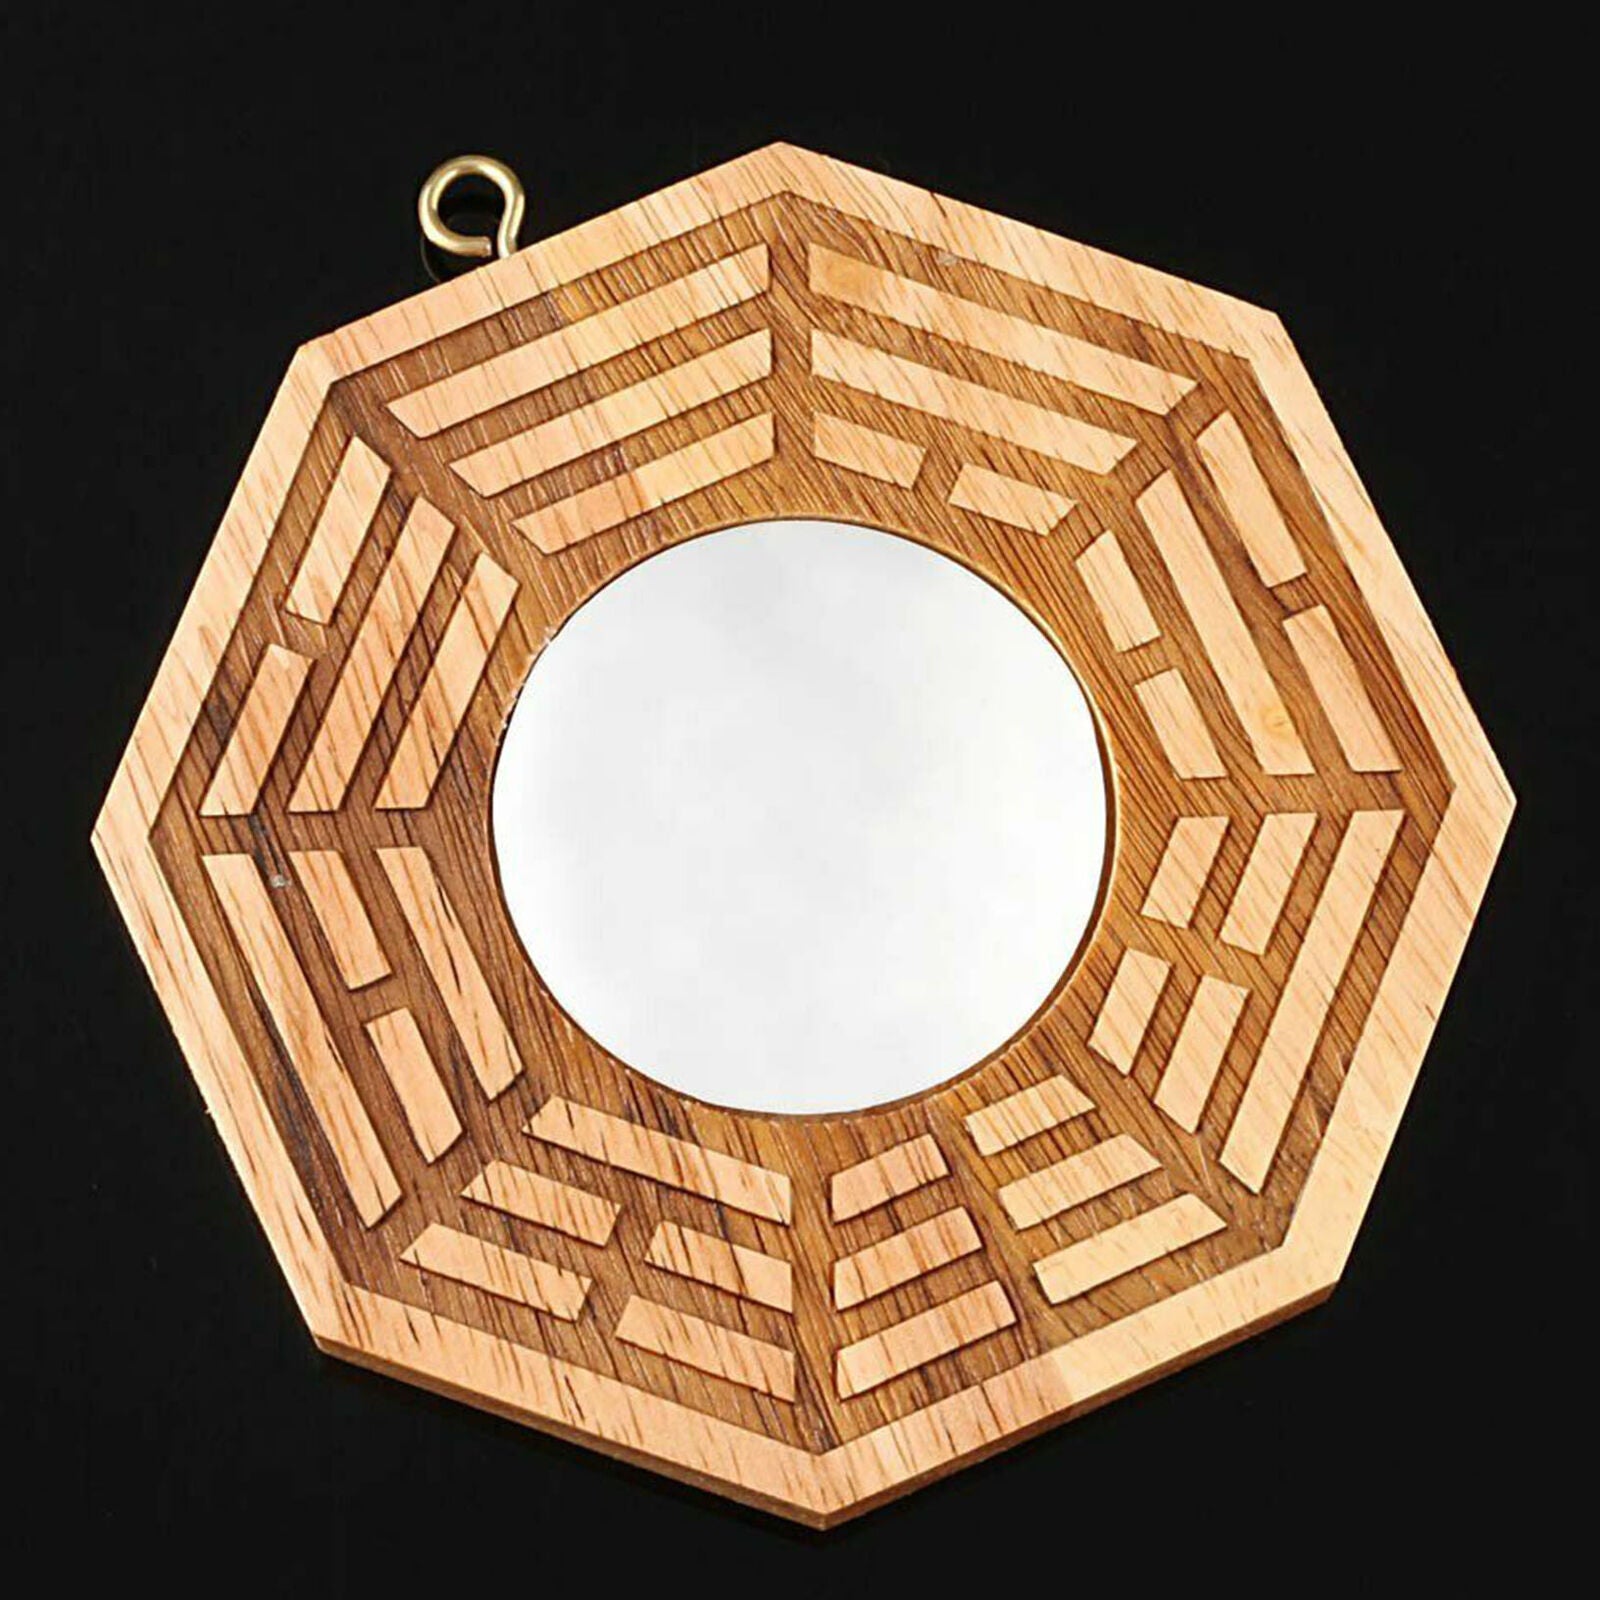 4" Peach Wood Feng Shui Bagua Pakua Mirror Convex Fortune Tai Chi Yin Yang